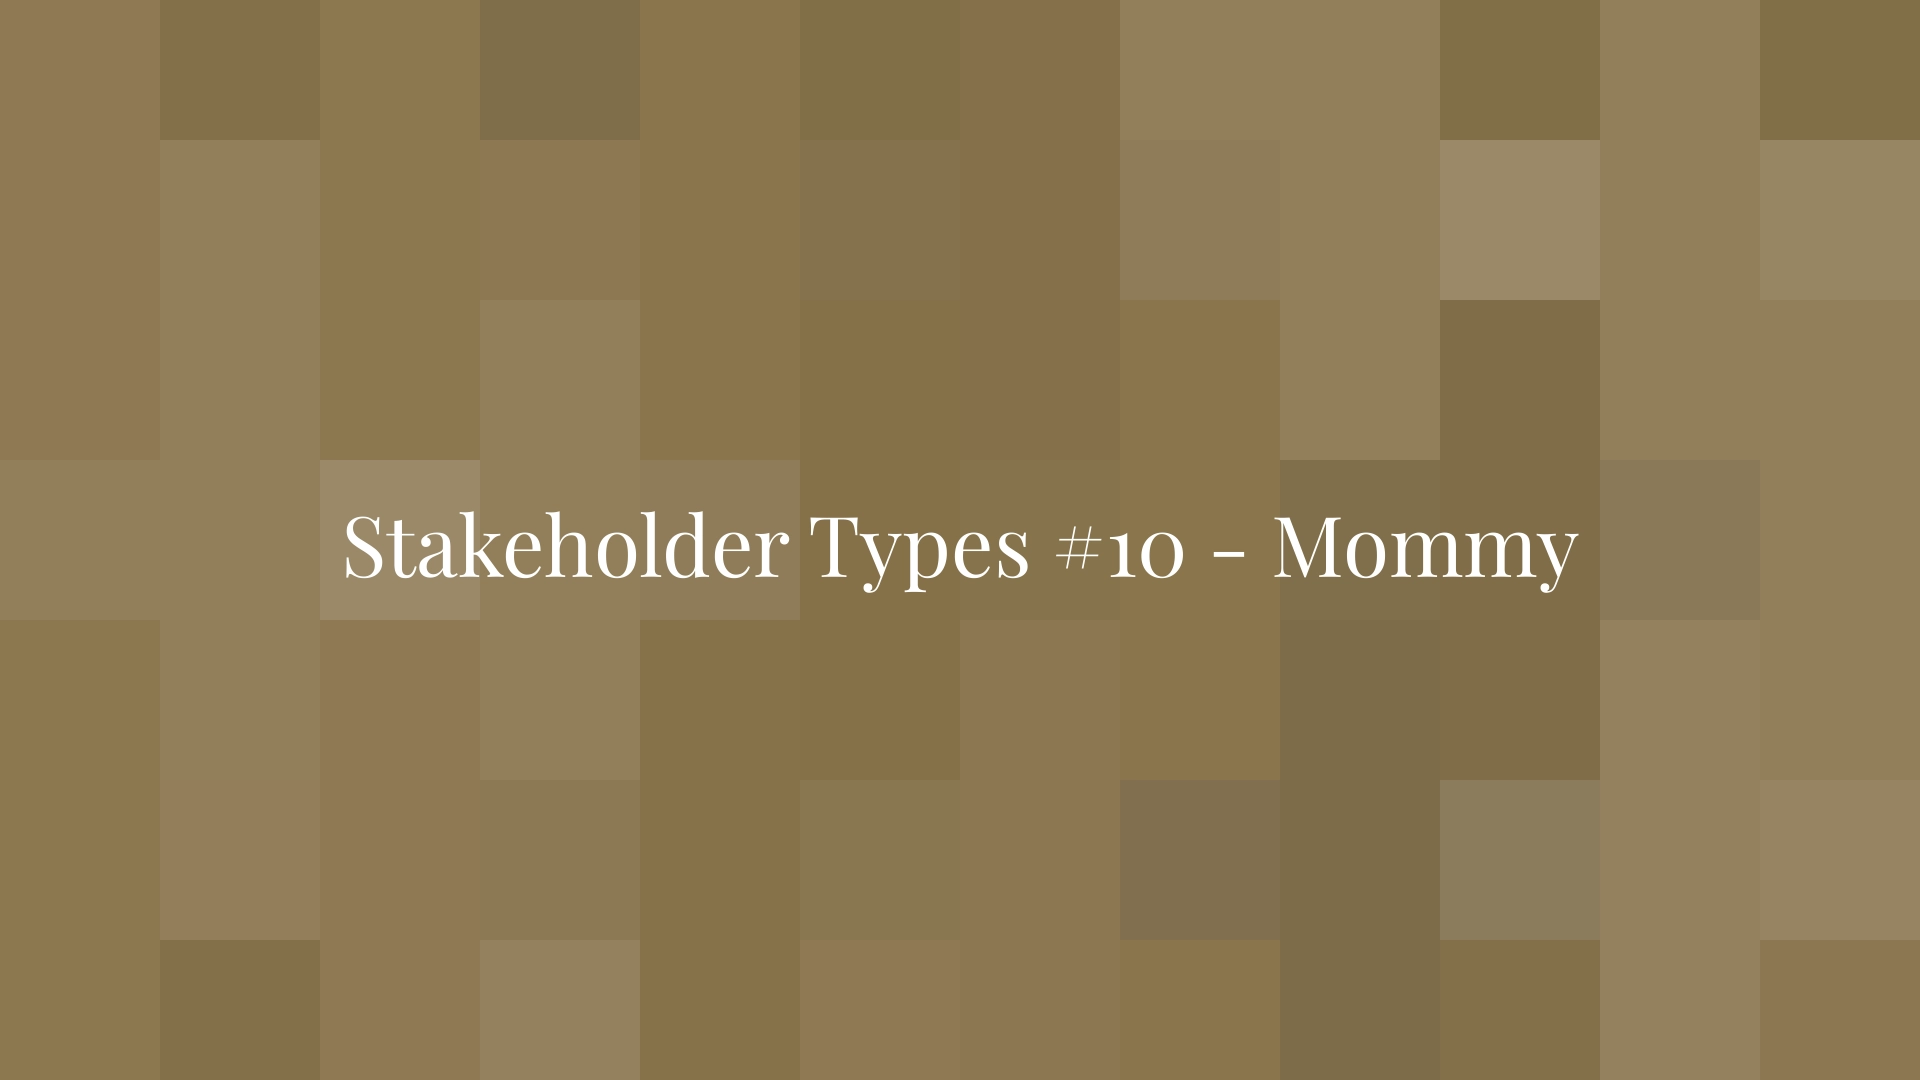 Tipos de partes interesadas n.º 10: ¿Cómo identificar a mamá?